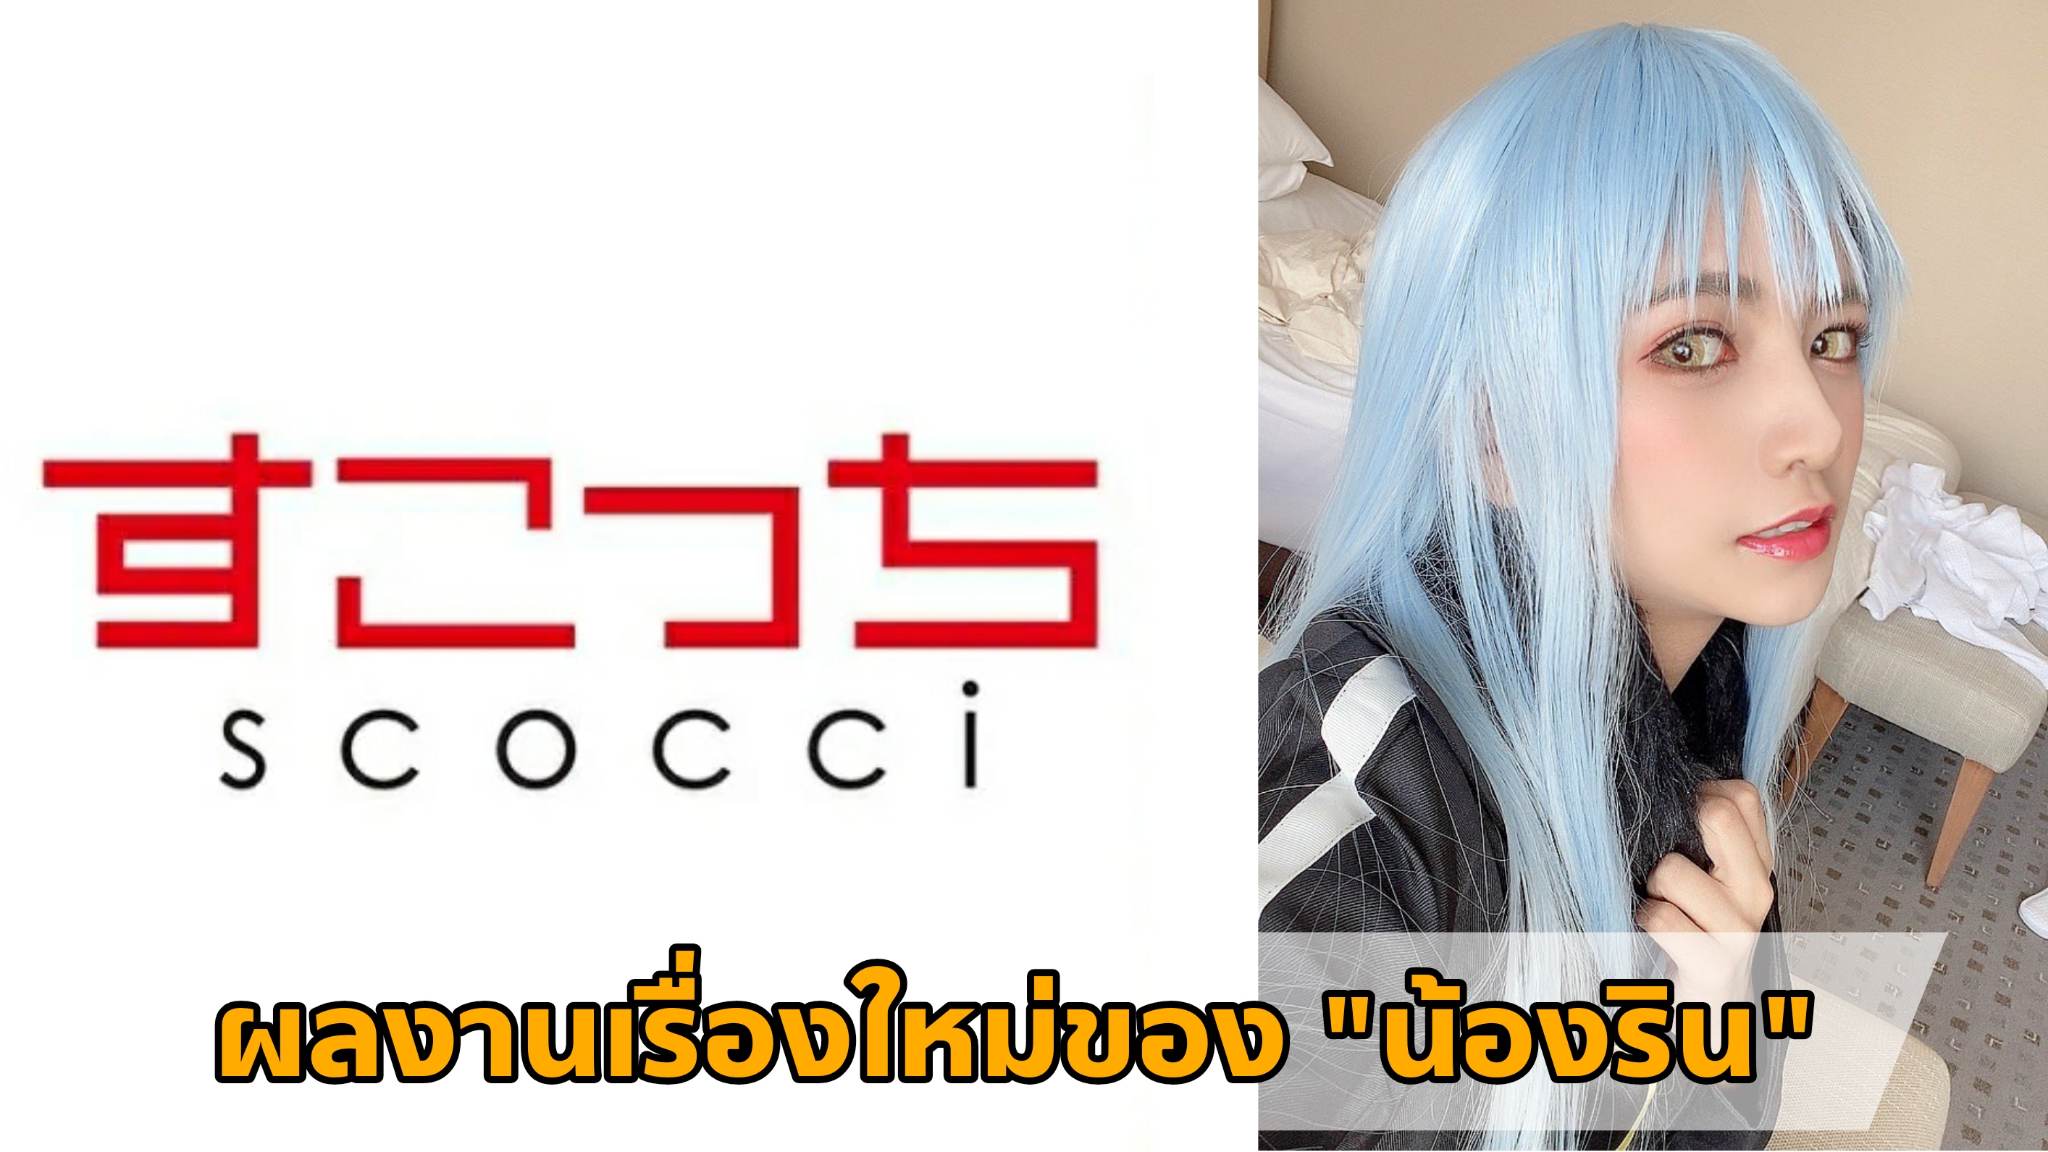 [SCOH-105] ผลงานเรื่องใหม่ของ "น้องริน" (Rin Miyazaki) Cosplay เป็น "ท่านริมุรุ" 34